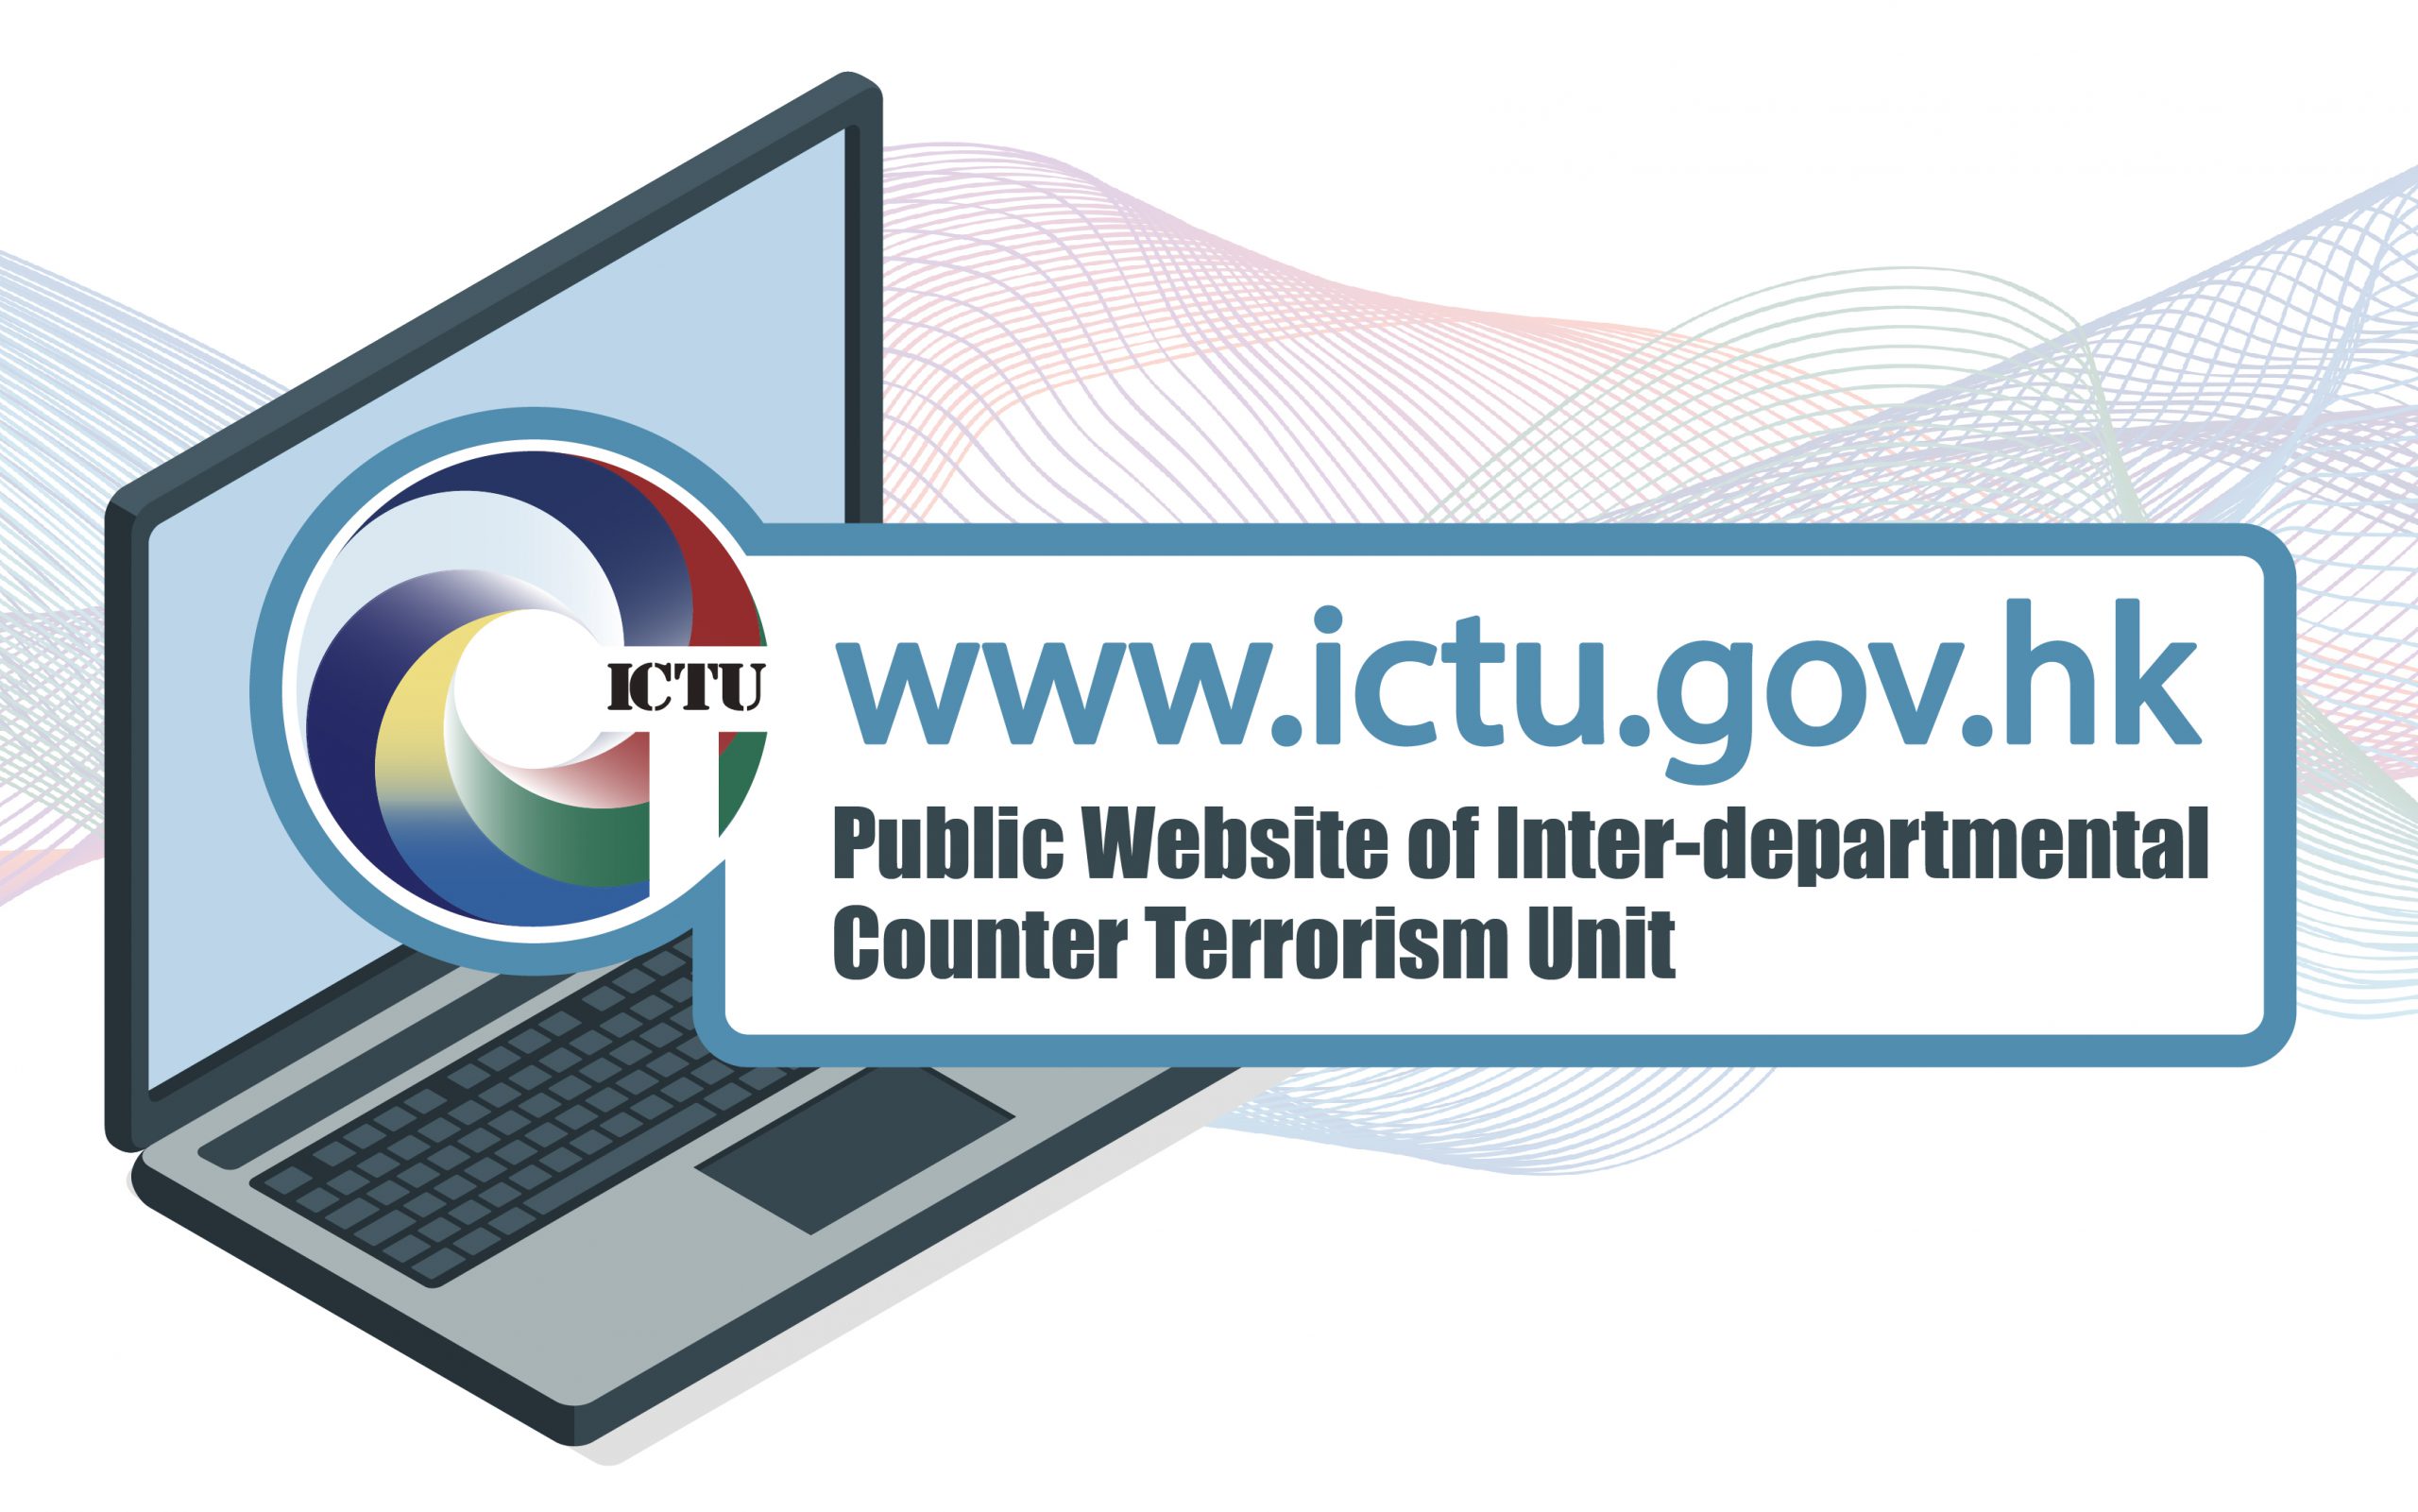 Launch of ICTU’s Website